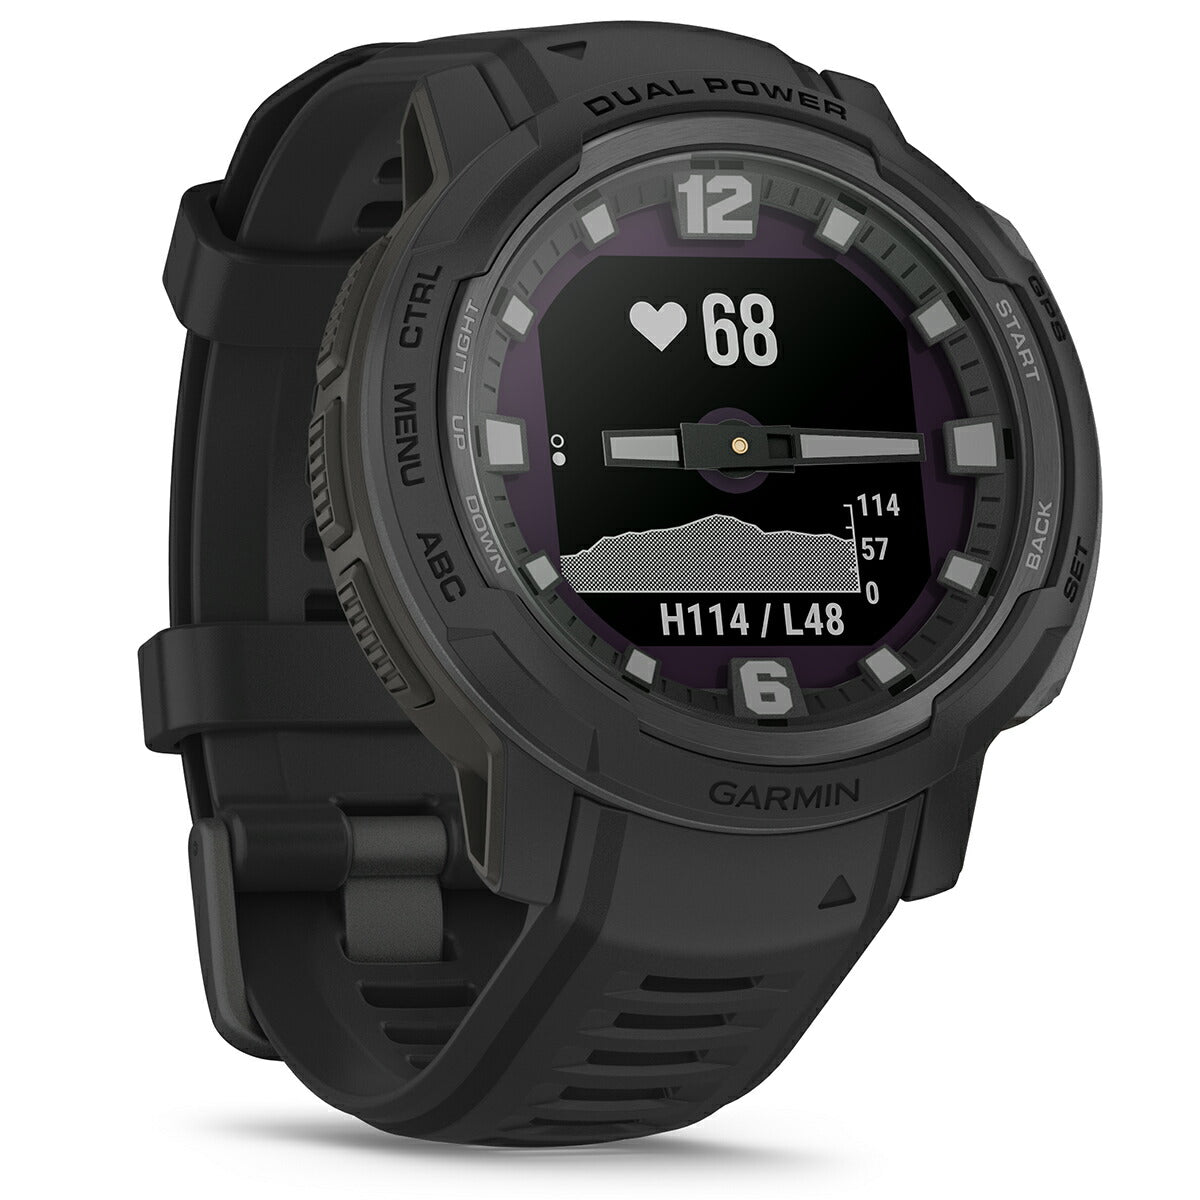 【24回分割手数料無料！】ガーミン GARMIN Instinct Crossover インスティンクト クロスオーバー デュアルパワー タクティクス 010-02730-40 Dual Power Tactical Edition Black スマートウォッチ 腕時計